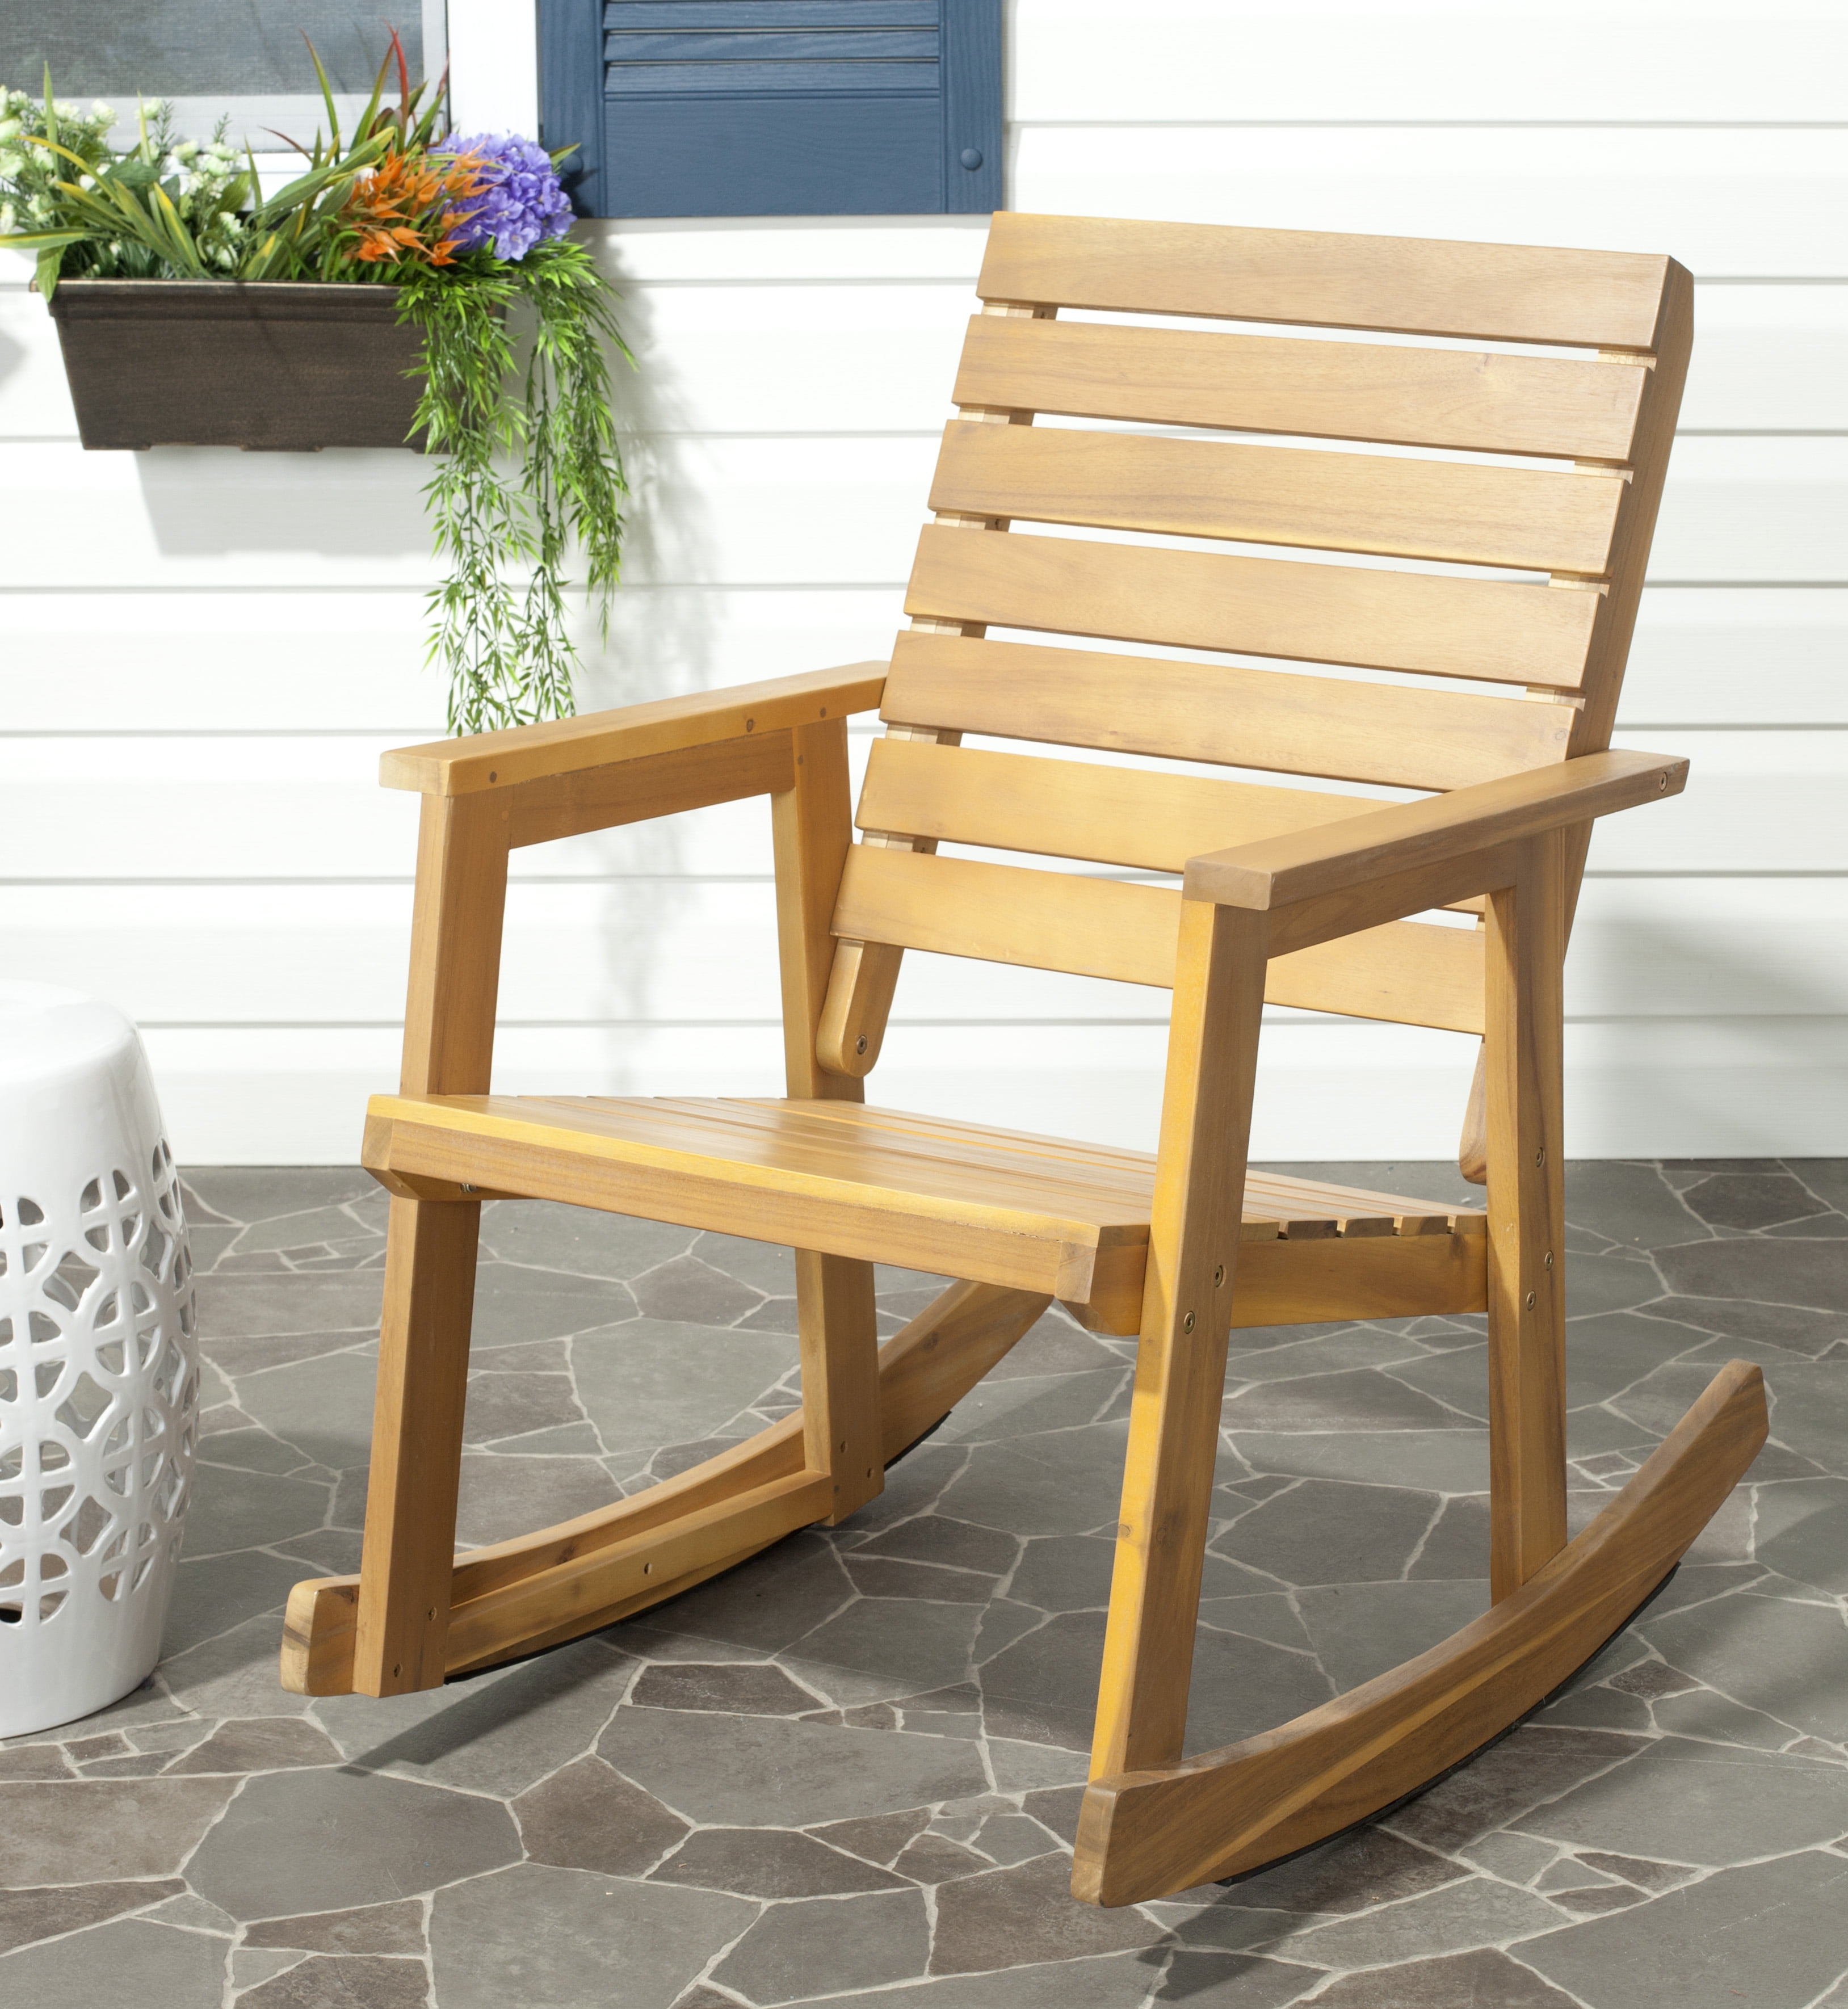 Wooden chair. Rocking Chair kpecло качалка. Кресло качалка Jepara. Кресло качалка деревянная. Кресло качалка дерево.